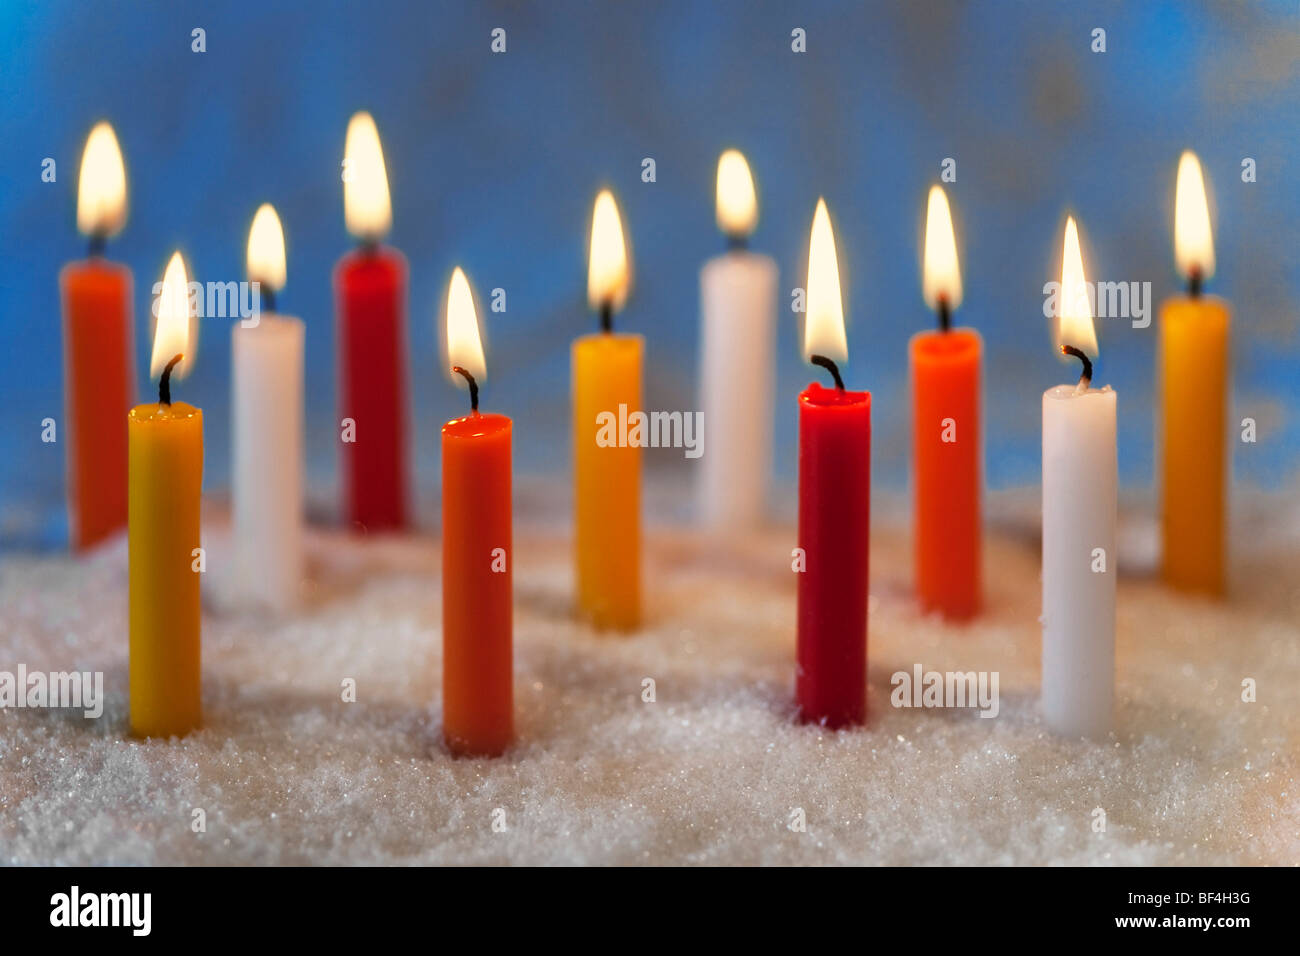 Burning coloured candles Stock Photo